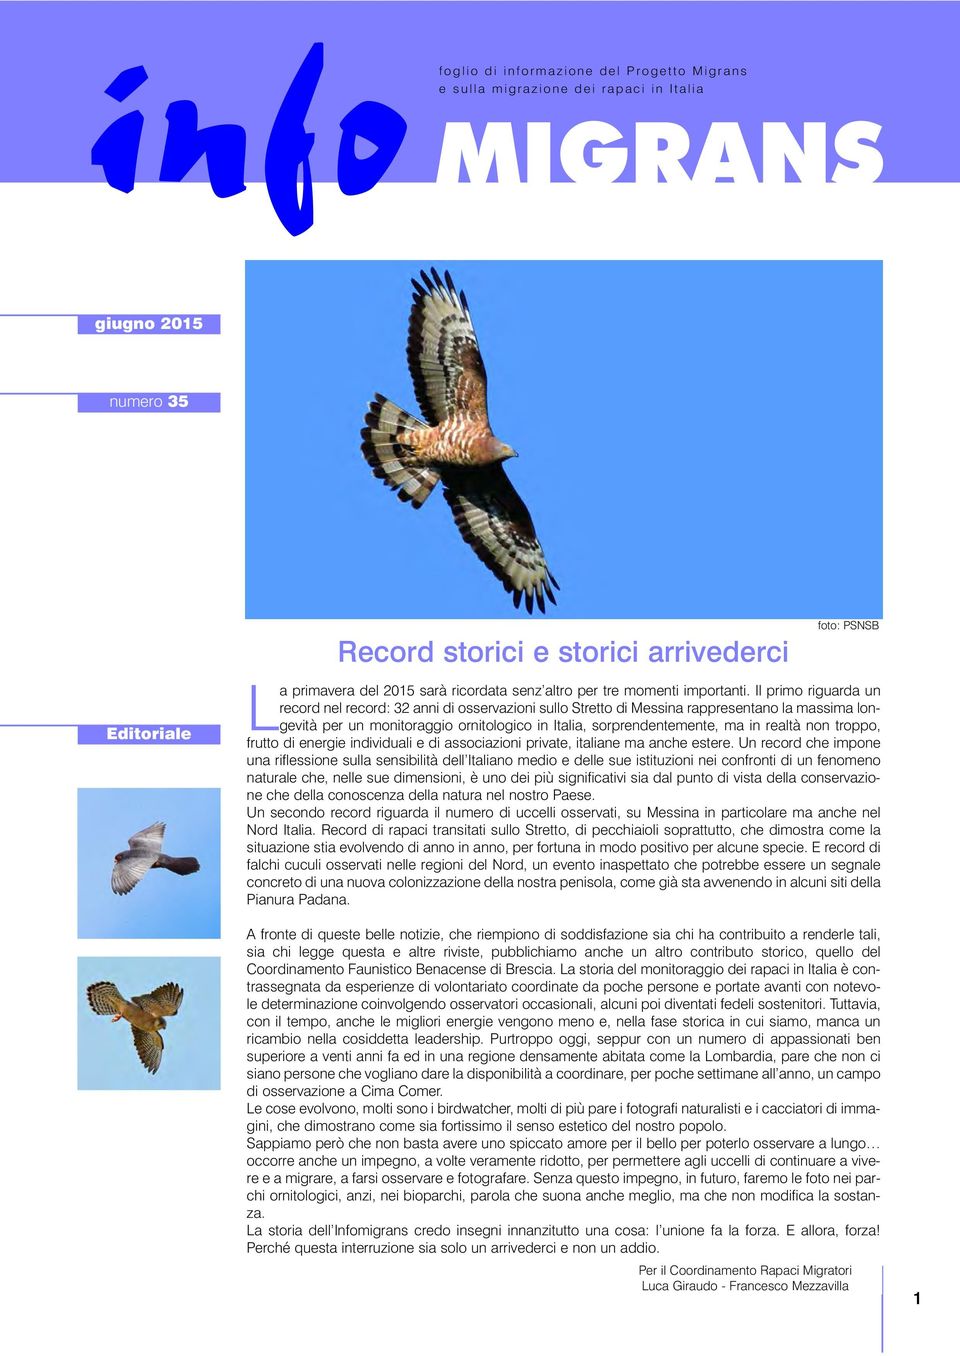 Il primo riguarda un record nel record: 3 anni di osservazioni sullo Stretto di Messina rappresentano la massima longevità per un monitoraggio ornitologico in Italia, sorprendentemente, ma in realtà